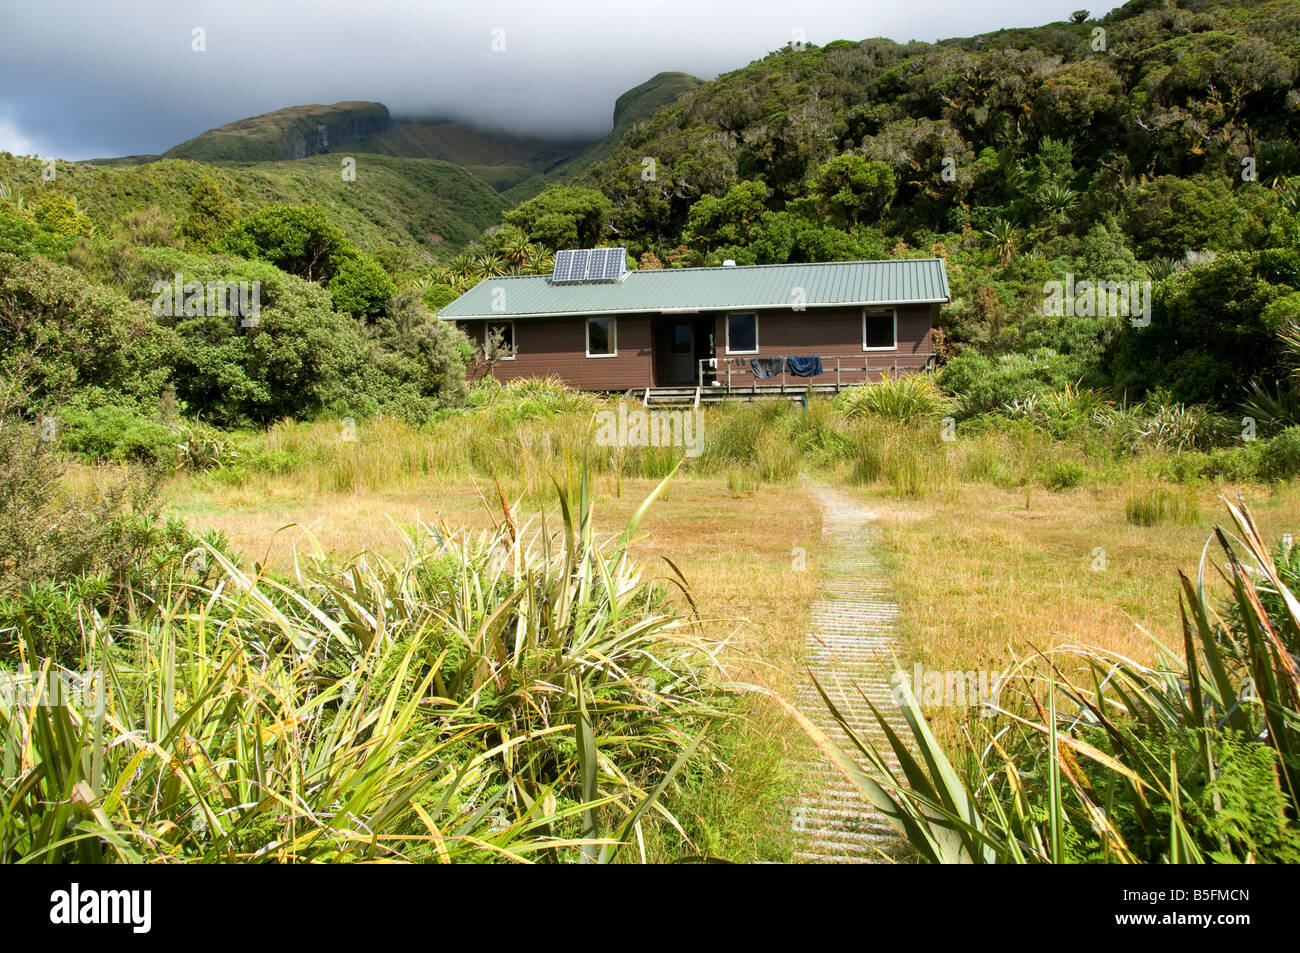 The Holly Hut, Mount Taranaki, Egmont National Park, North Island, New Zealand Stock Photo